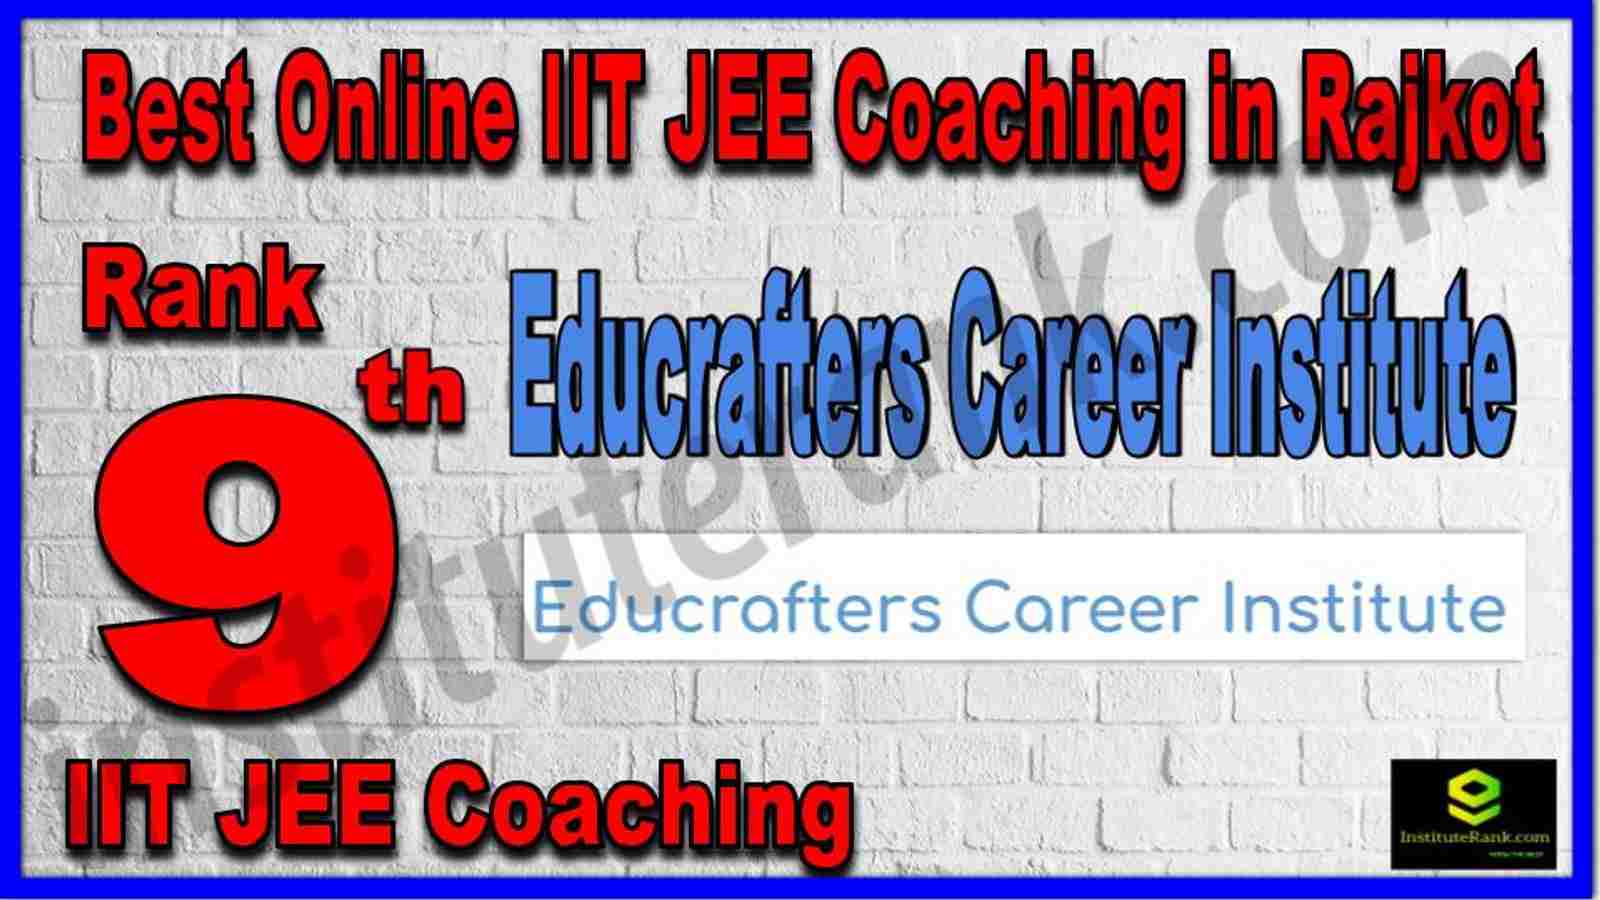 Rank 9th Best Online IIT JEE Coaching in Rajkot